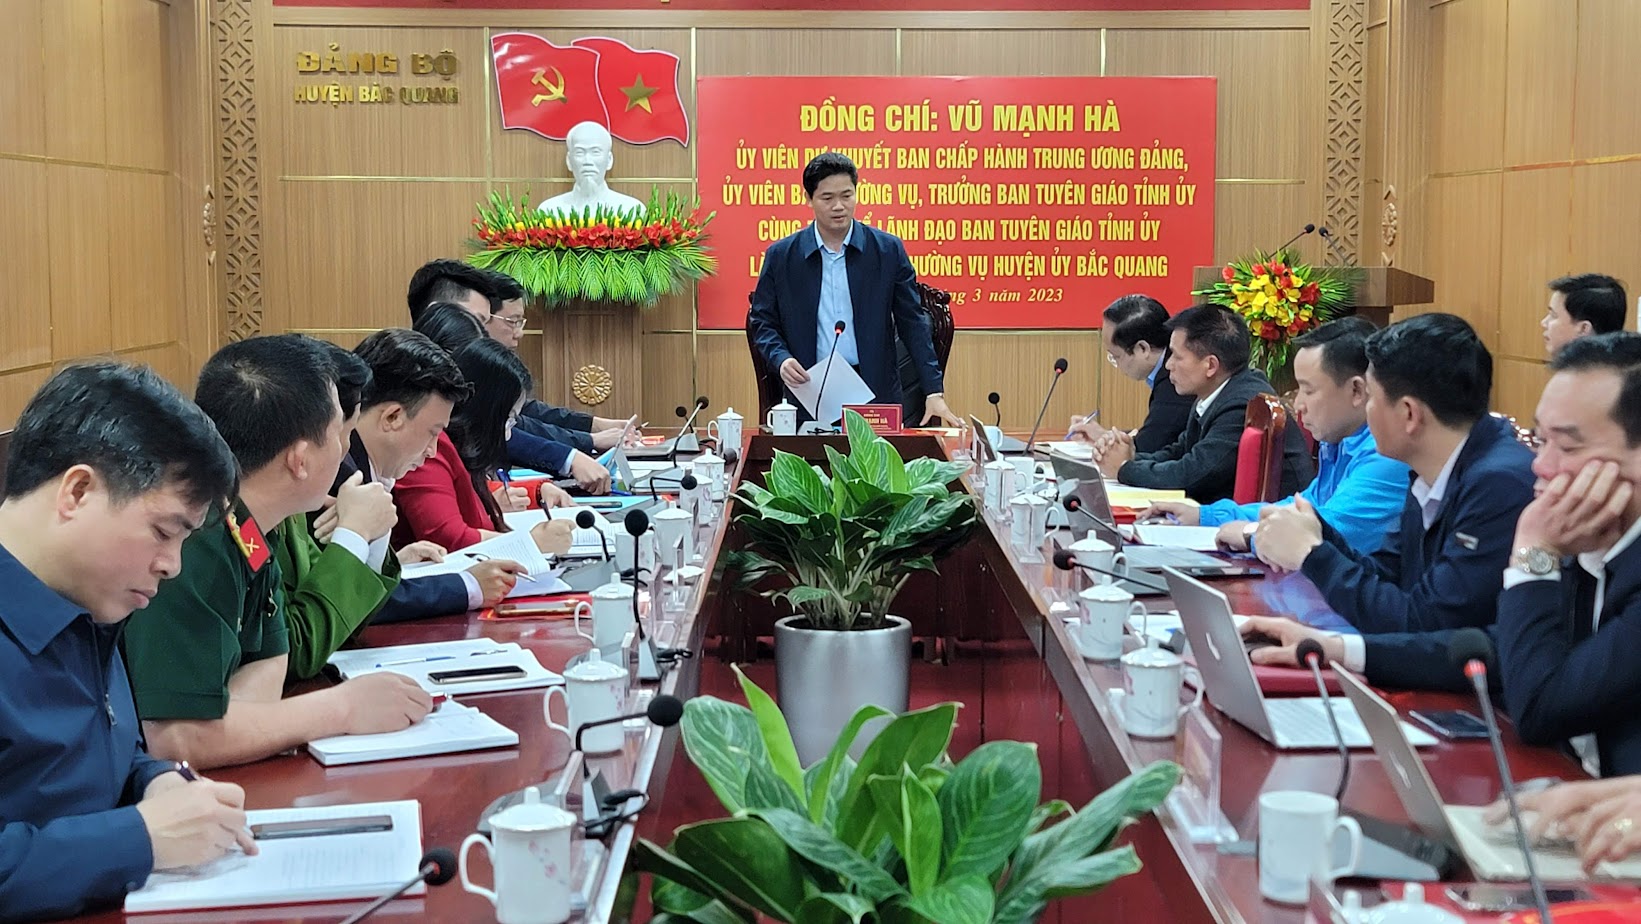 Đồng chí Vũ Mạnh Hà, Ủy viên Dự khuyết Trung ương Đảng – Trưởng Ban Tuyên giáo Tỉnh ủy làm việc với BTV Huyện ủy Bắc Quang